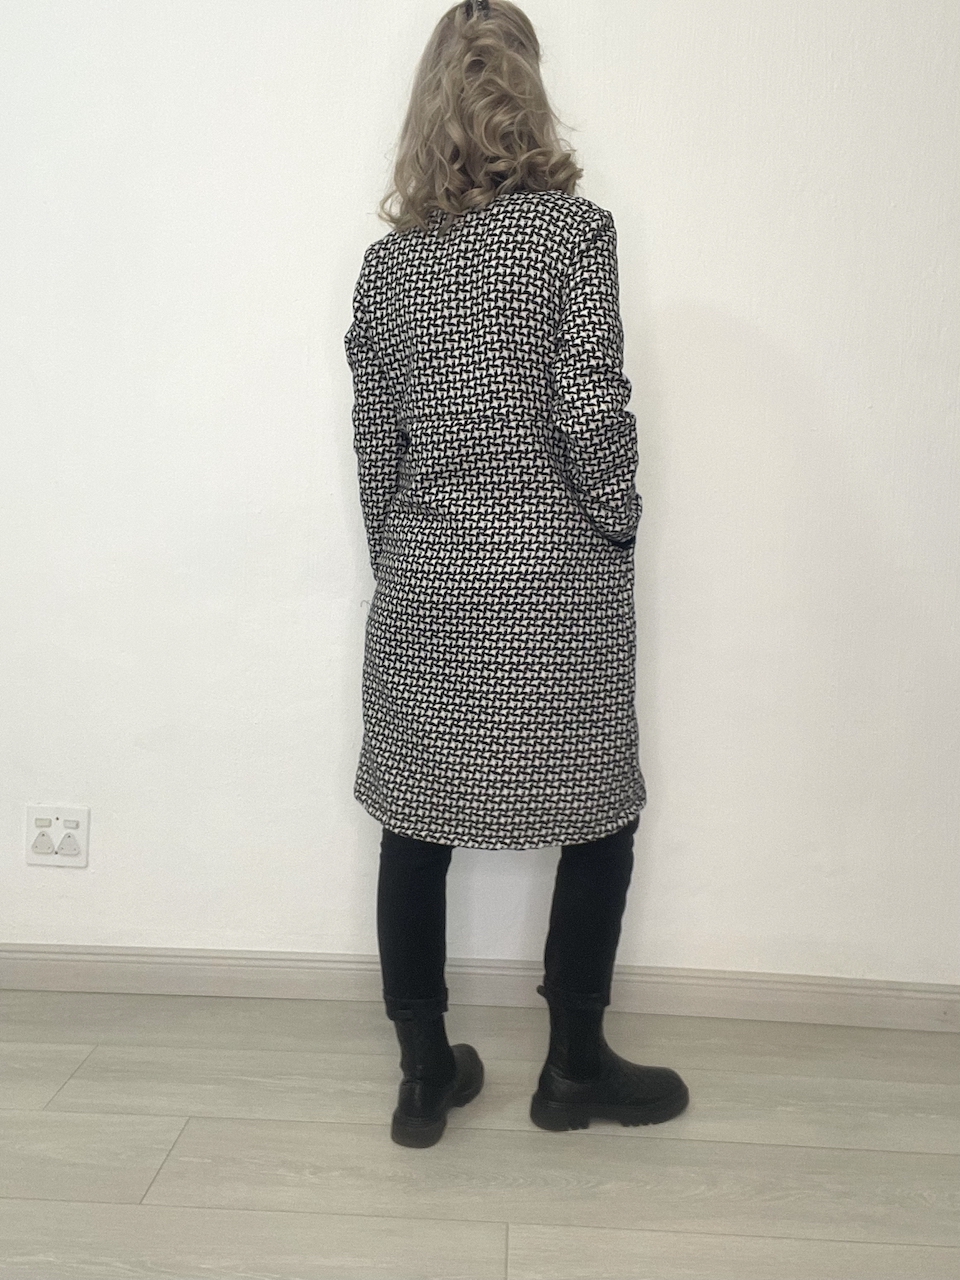 new jacket – back